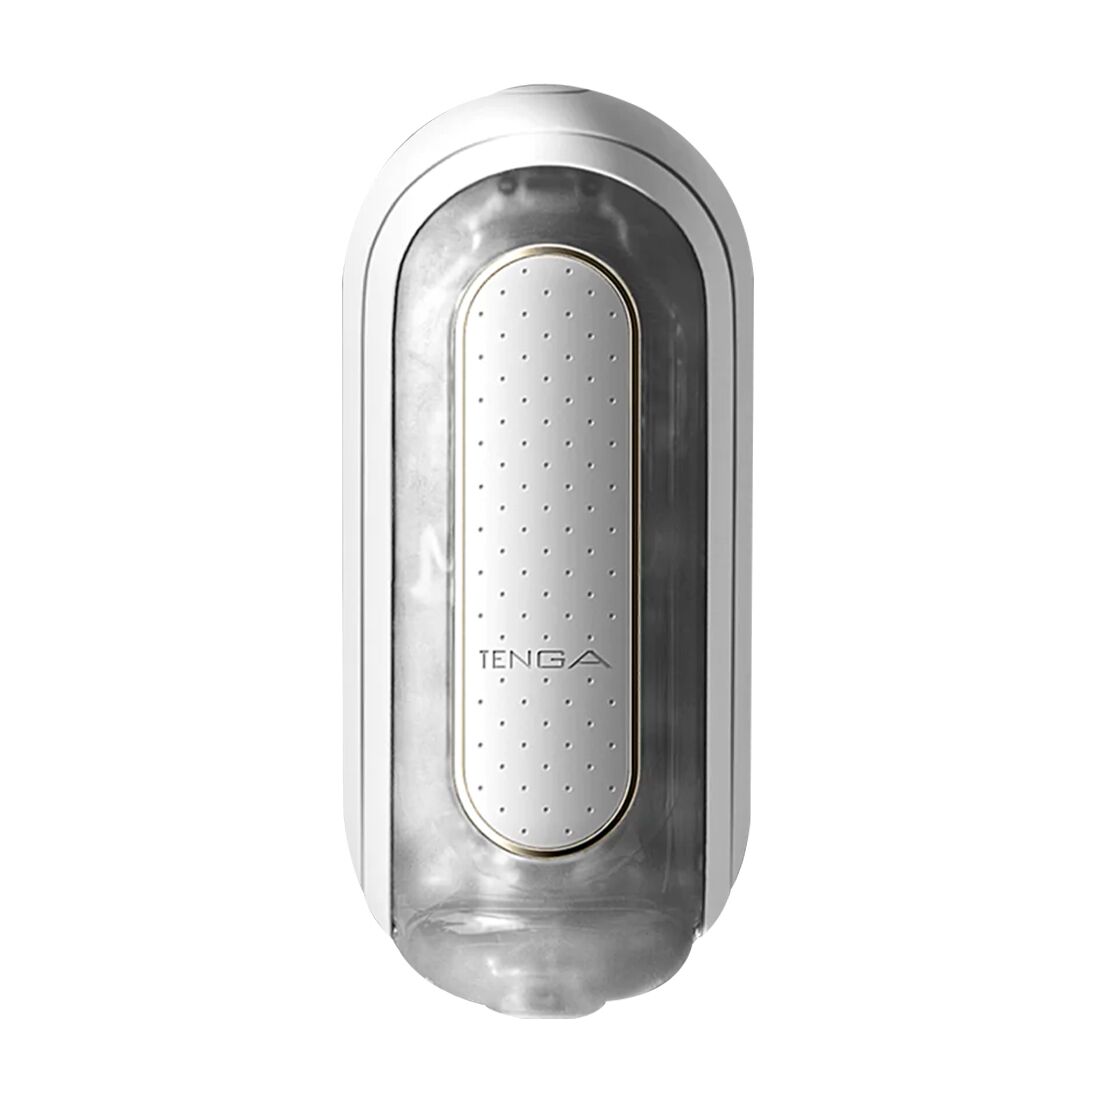 Вибромастурбатор Tenga Flip Zero Electronic Vibration White, изменяемая и�нтенсивность, раскладной